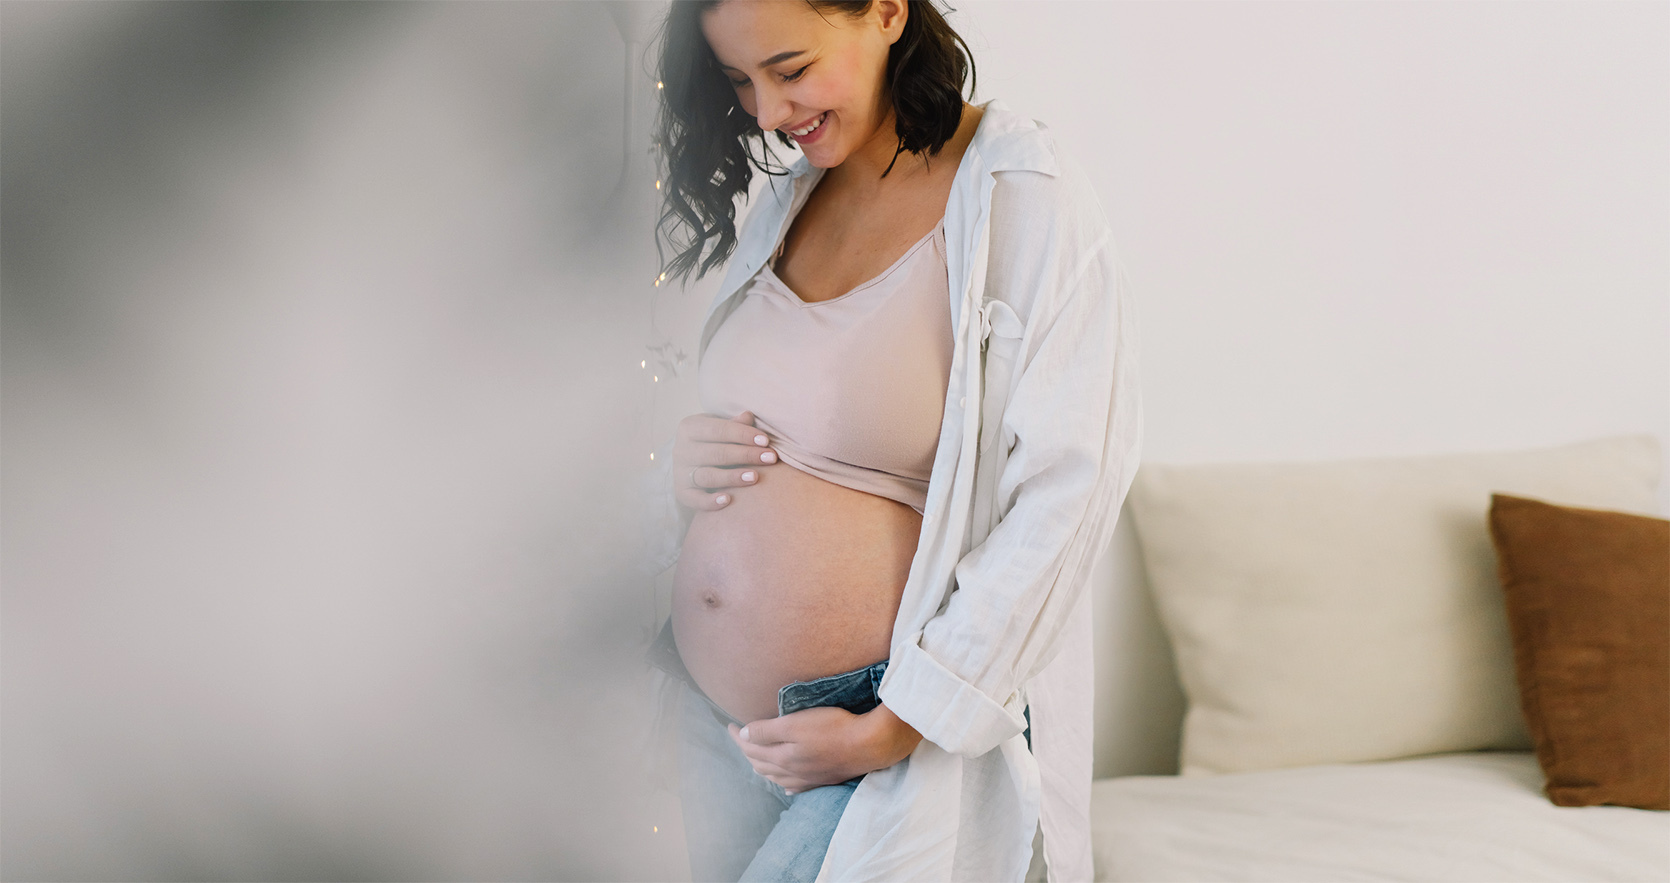 Progesteron w ciąży – jakie są prawidłowe normy? /fot. iStock